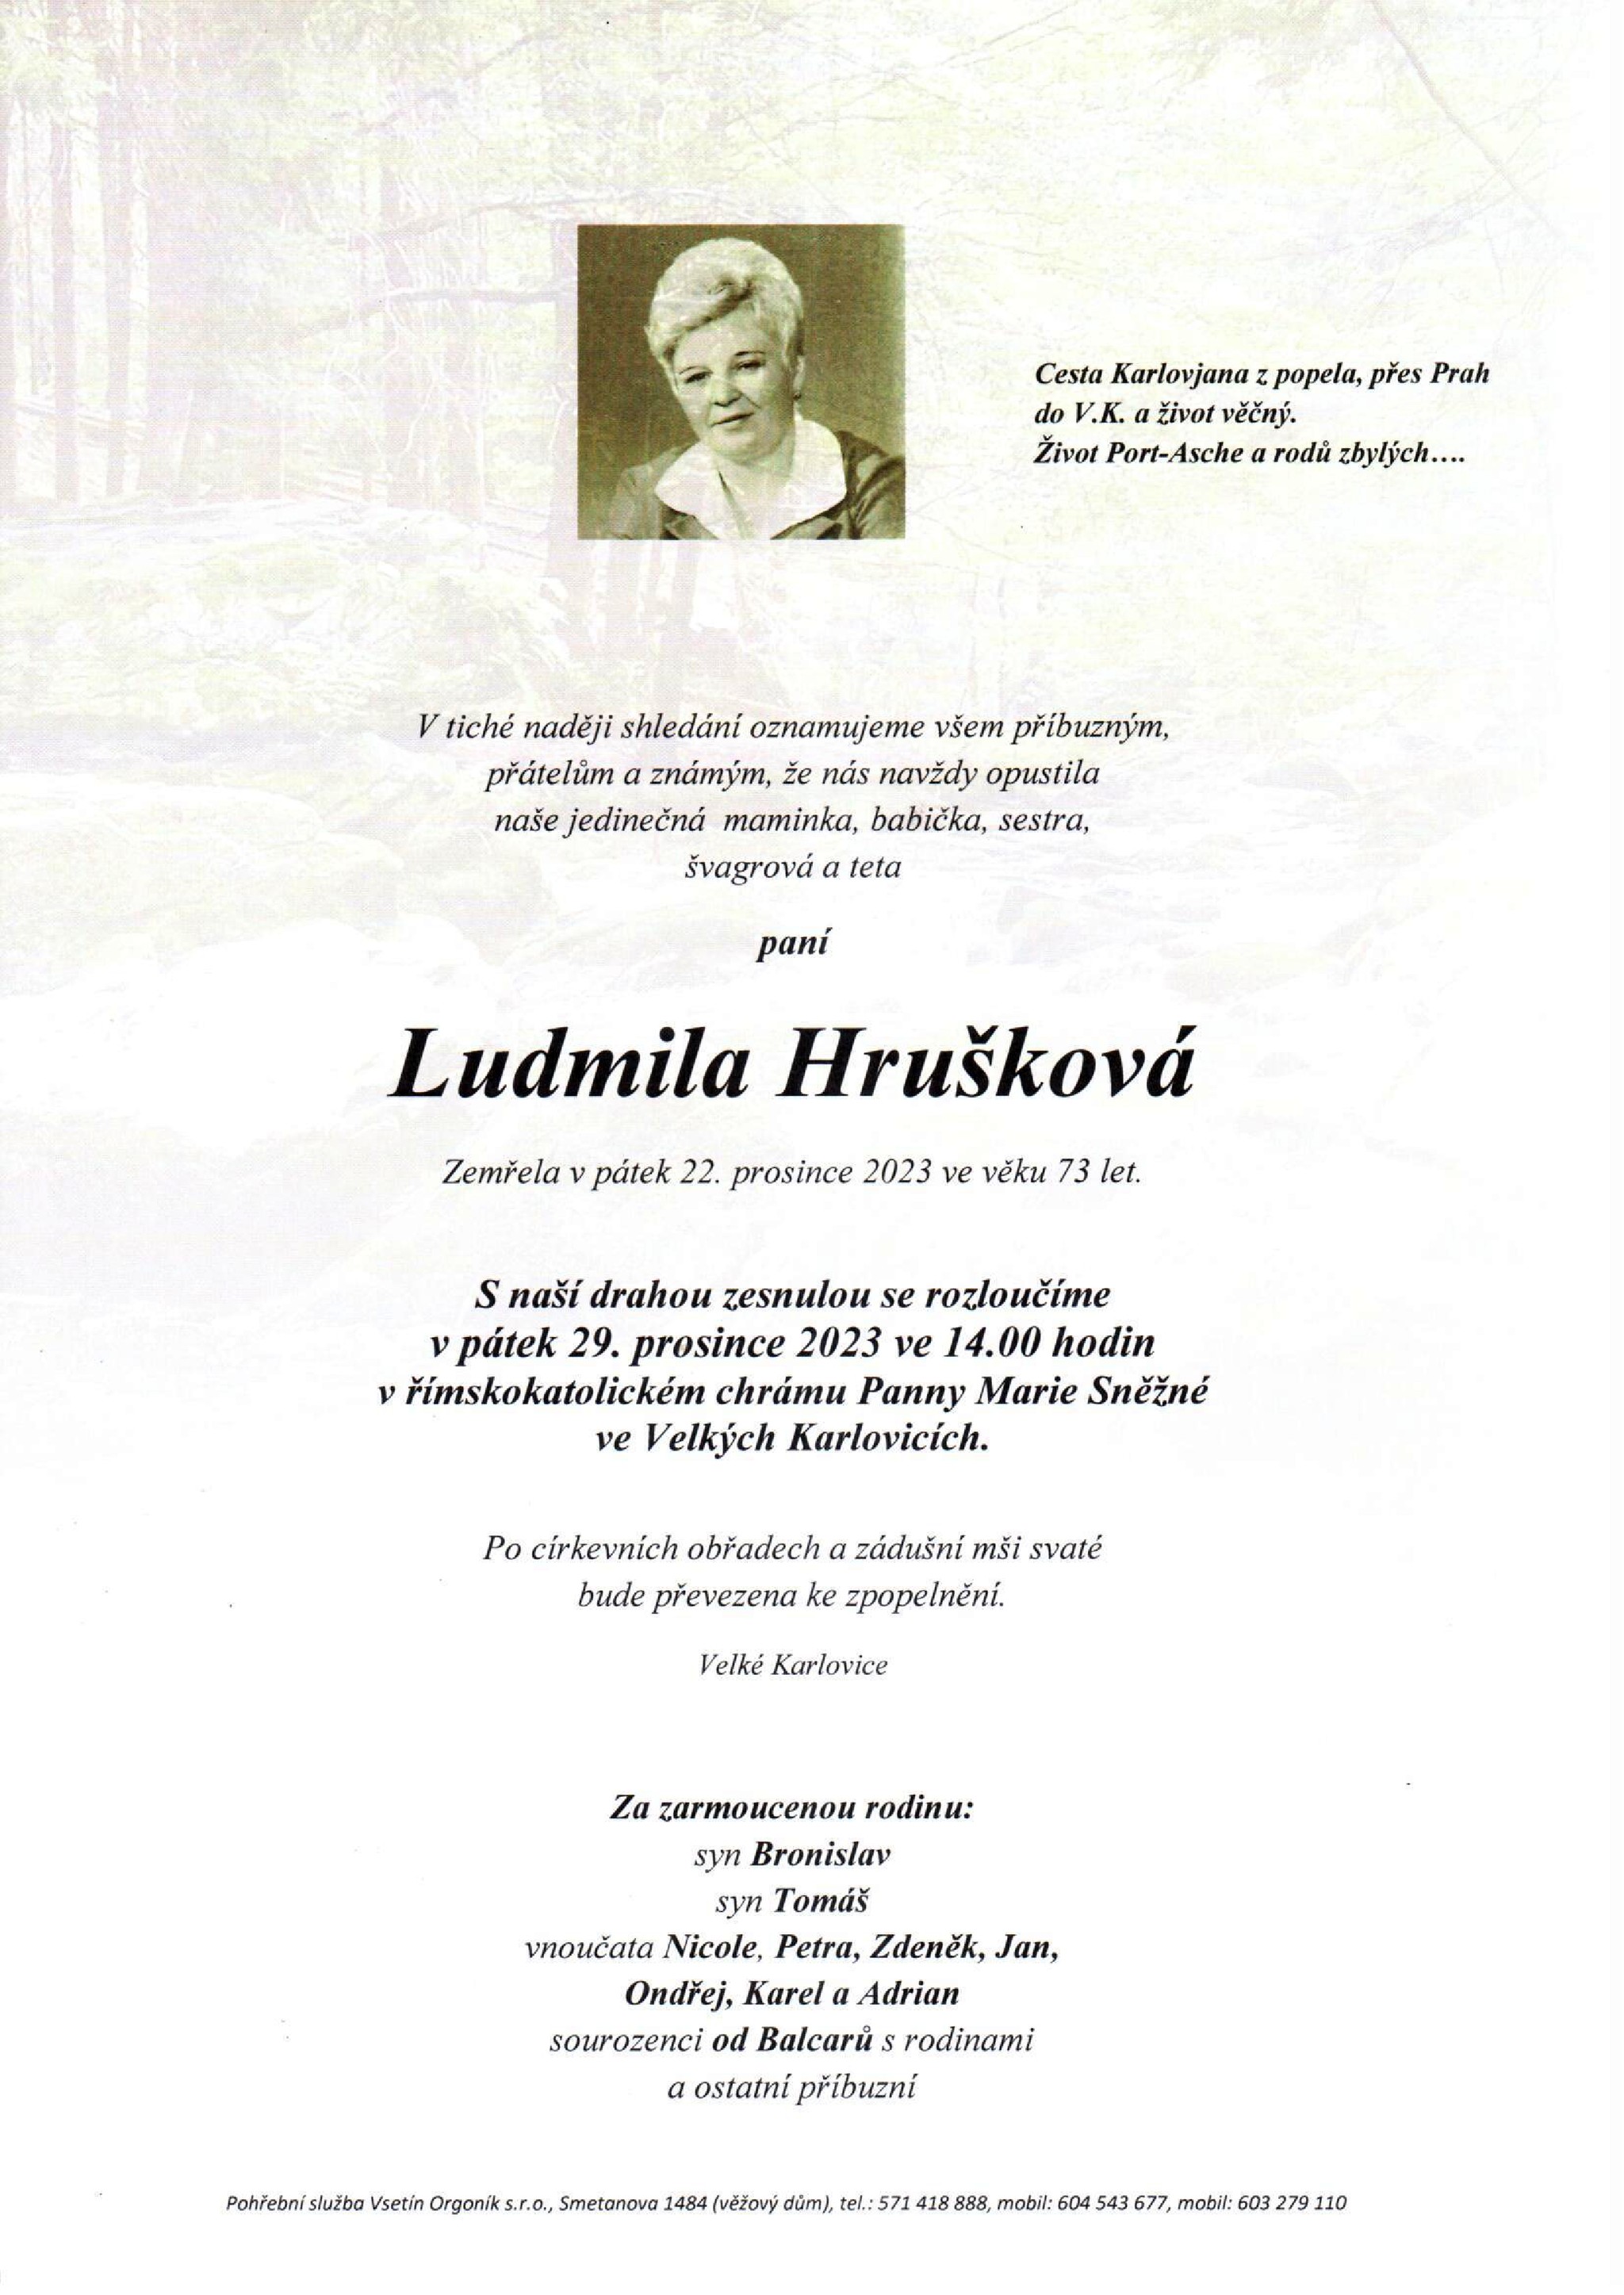 Ludmila Hrušková